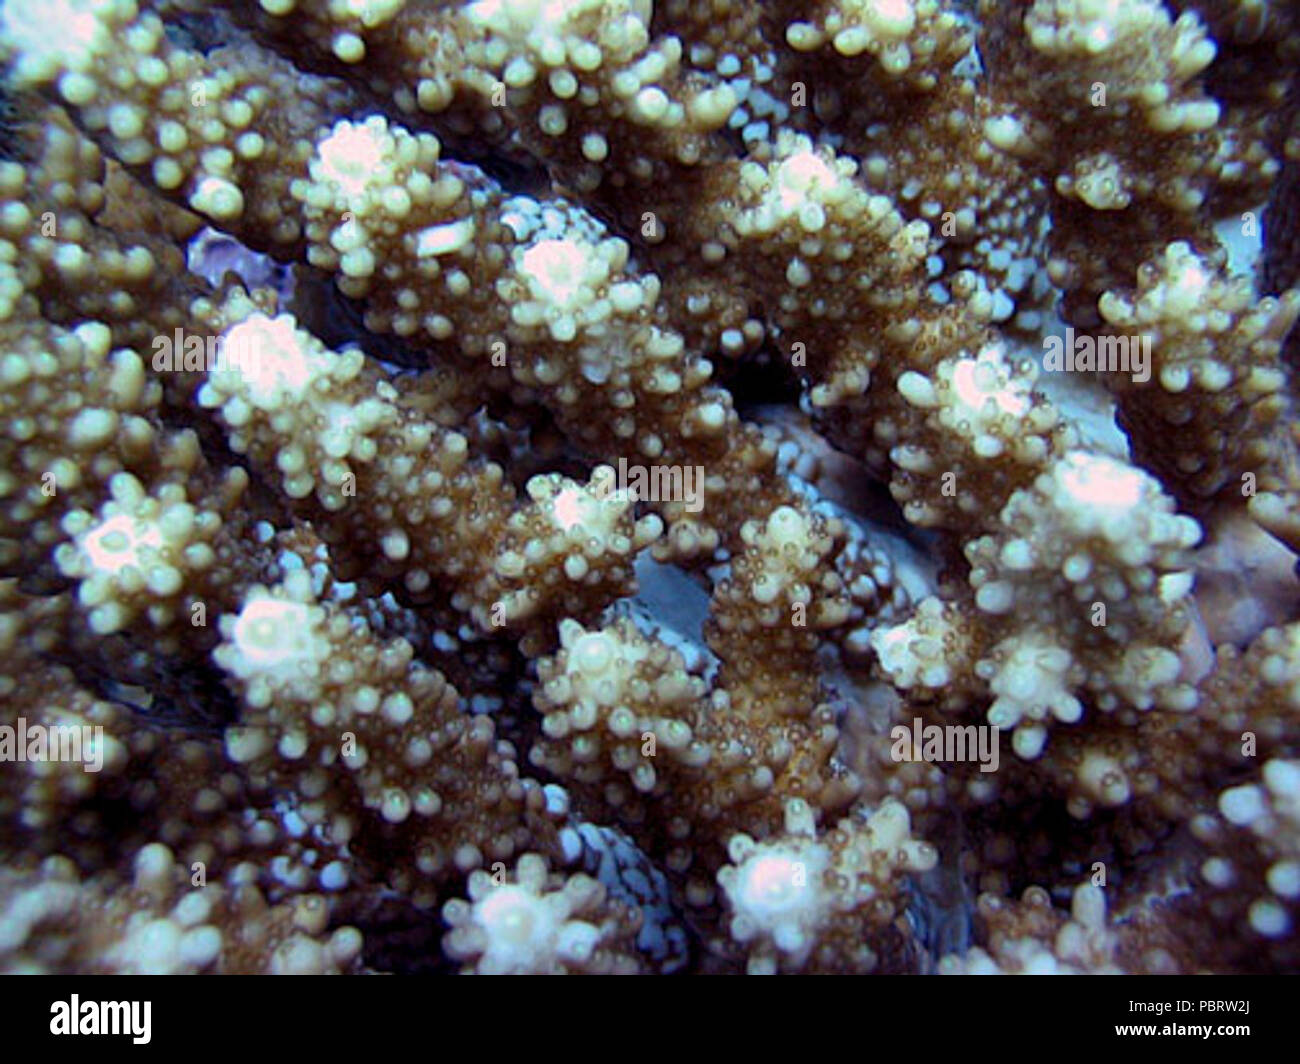 Acropora retusa coralitos. Stock Photo